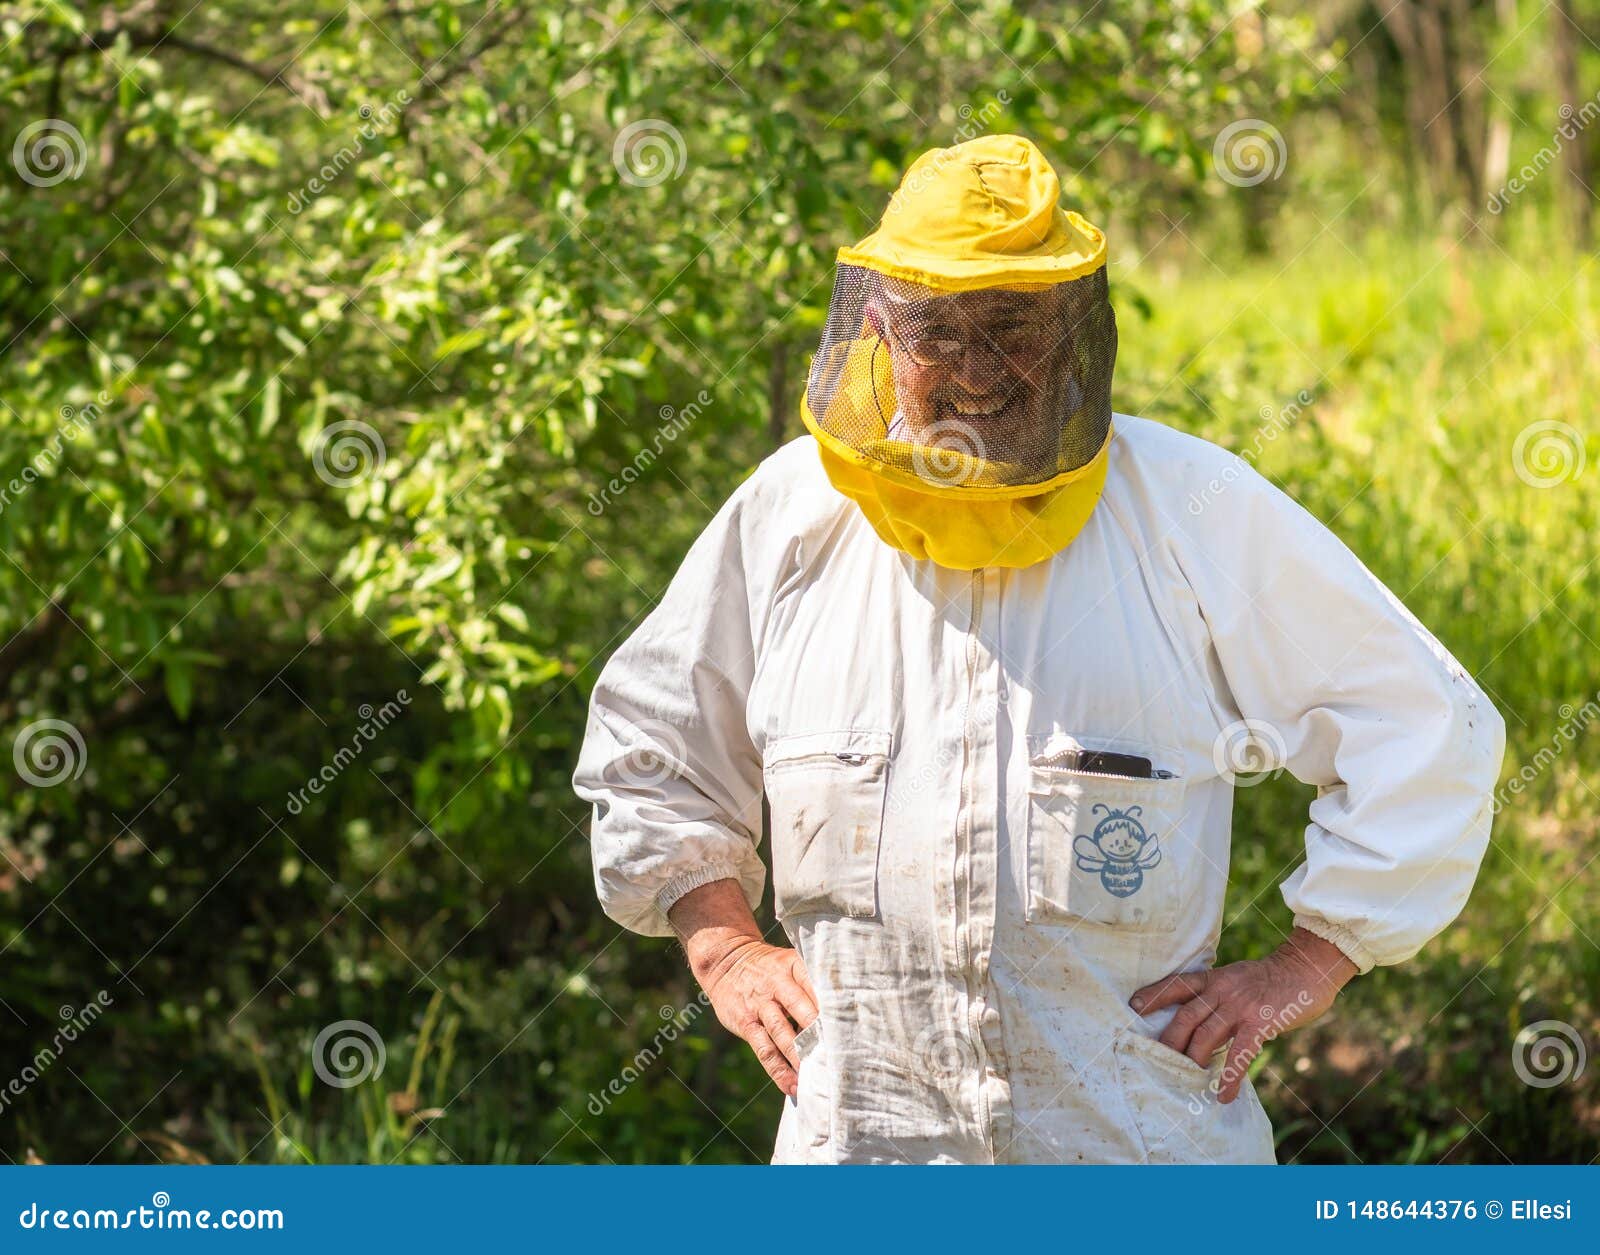 Ritratto Dell'apicoltore Sorridente Con Il Cappello Ed Il Velo Di Apicoltura  Fotografia Stock - Immagine di camma, ritratto: 148644376